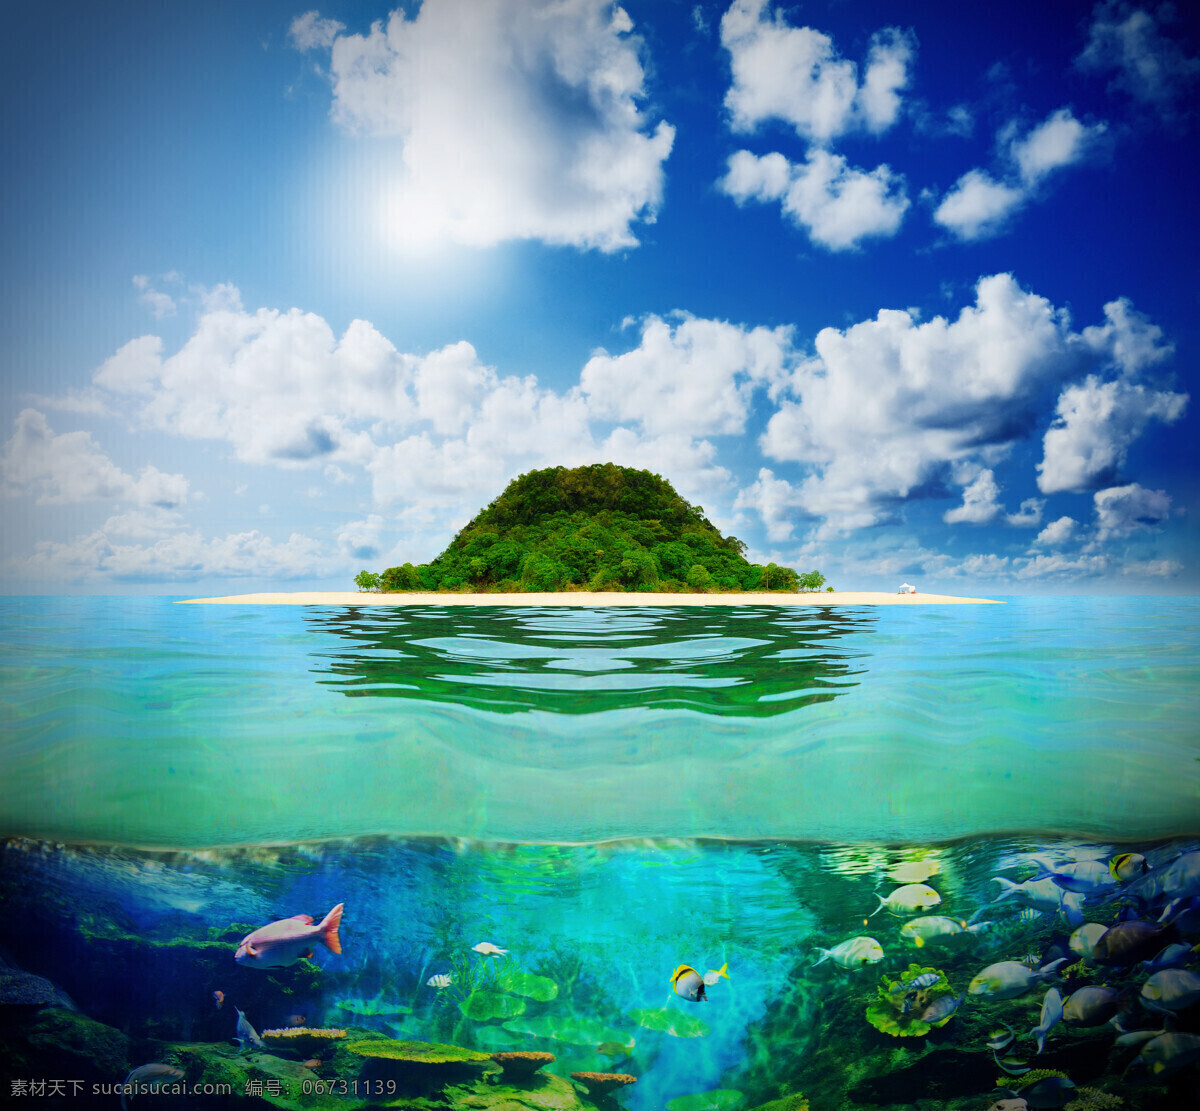 海岛 风景 海底 世界 海岛风景 海底世界 美丽海岸风景 大海风景 海景 美丽风景 大海图片 风景图片